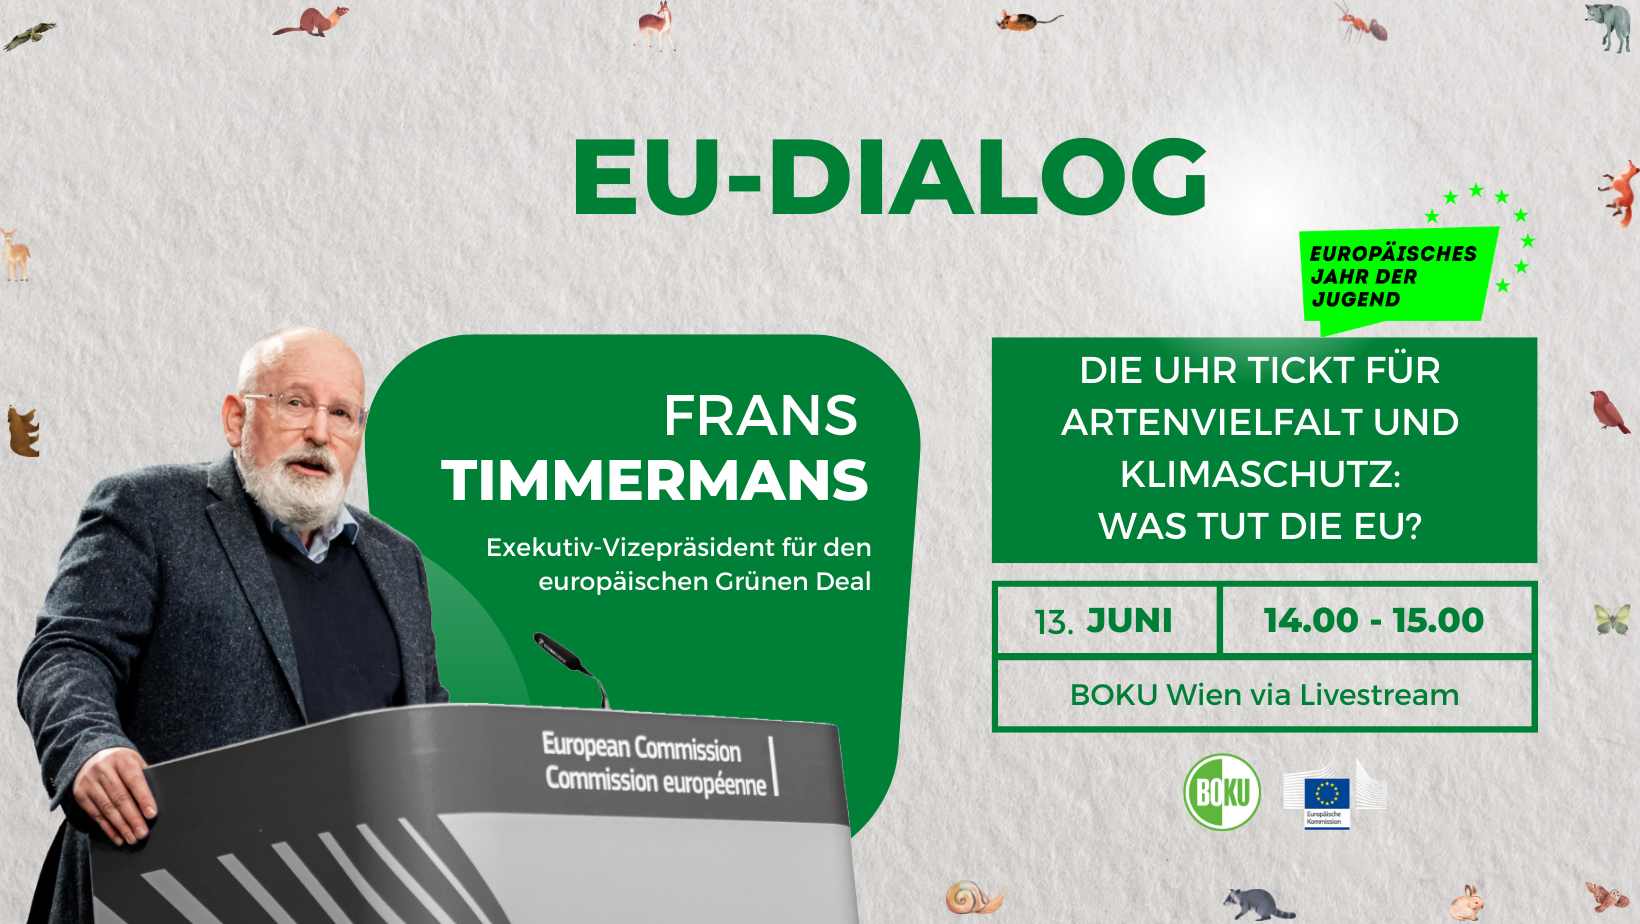 EU-Dialog mit Frans Timmermans, Exekutiv-Vizepräsident für den europäischen Grünen Deal, Europäische Kommission, 13.6.2022